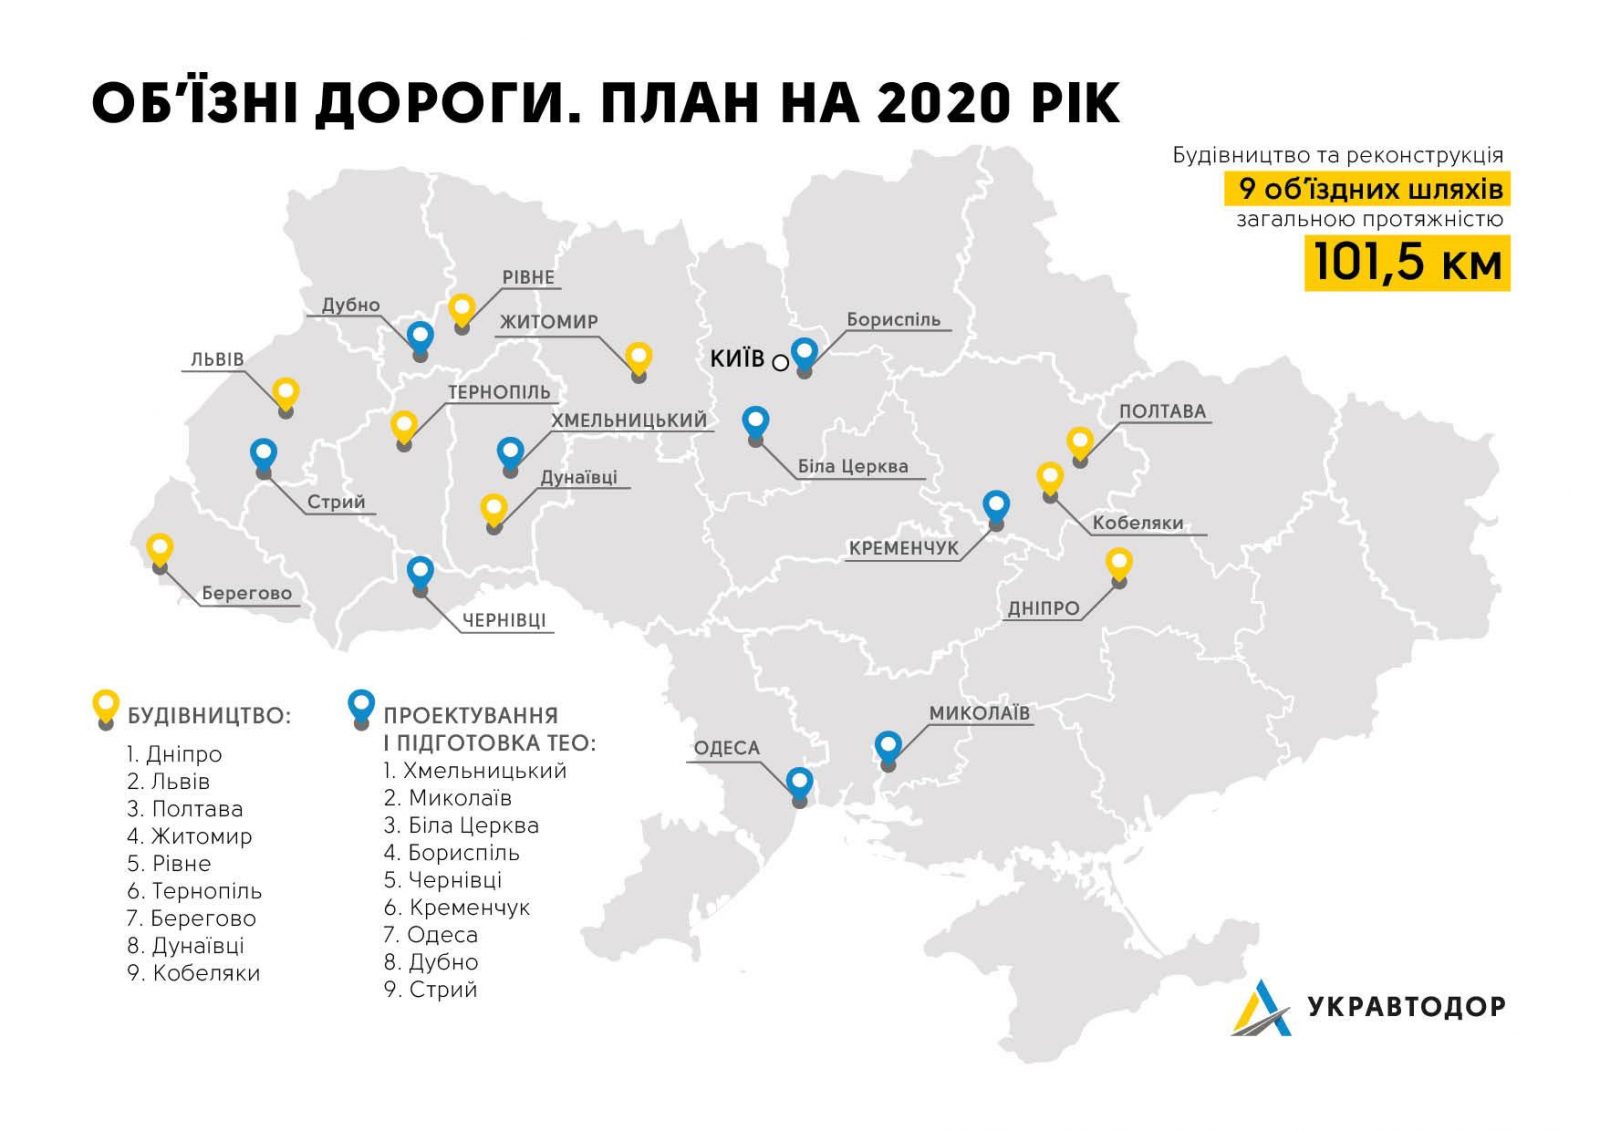 В 2020 году Укравтодор построит 9 новых объездных дорог